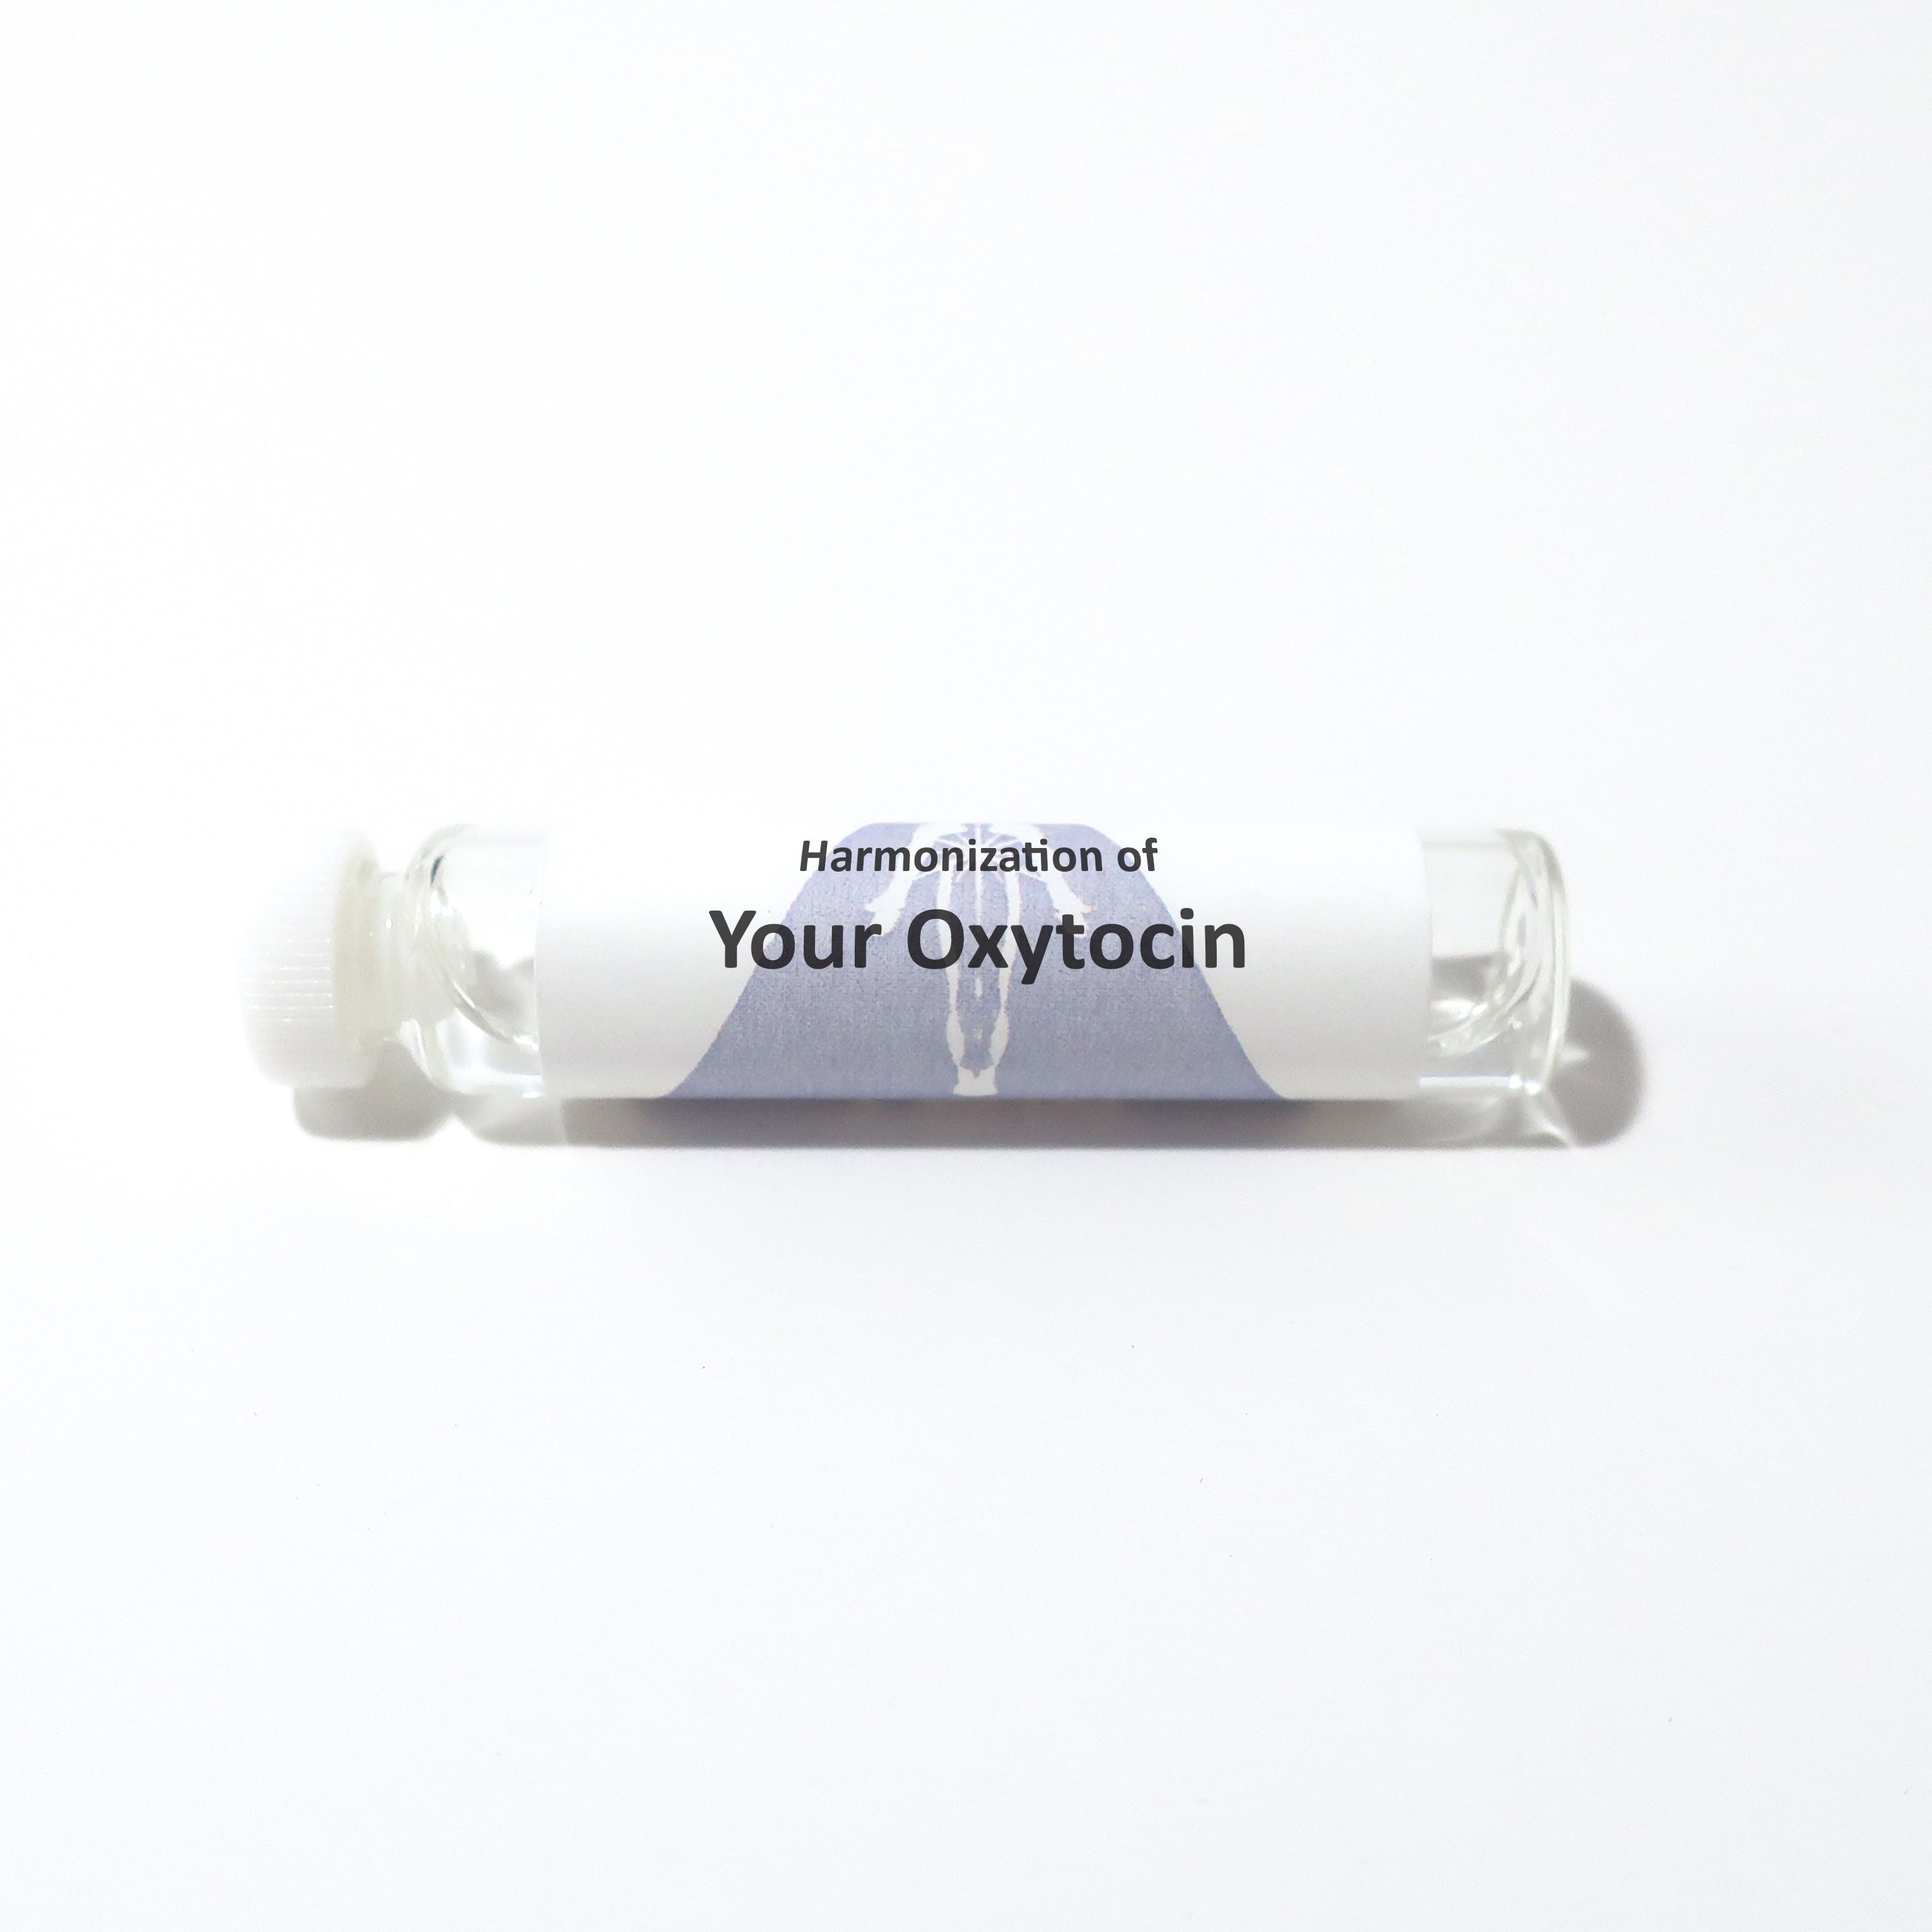 Your Oxytocin